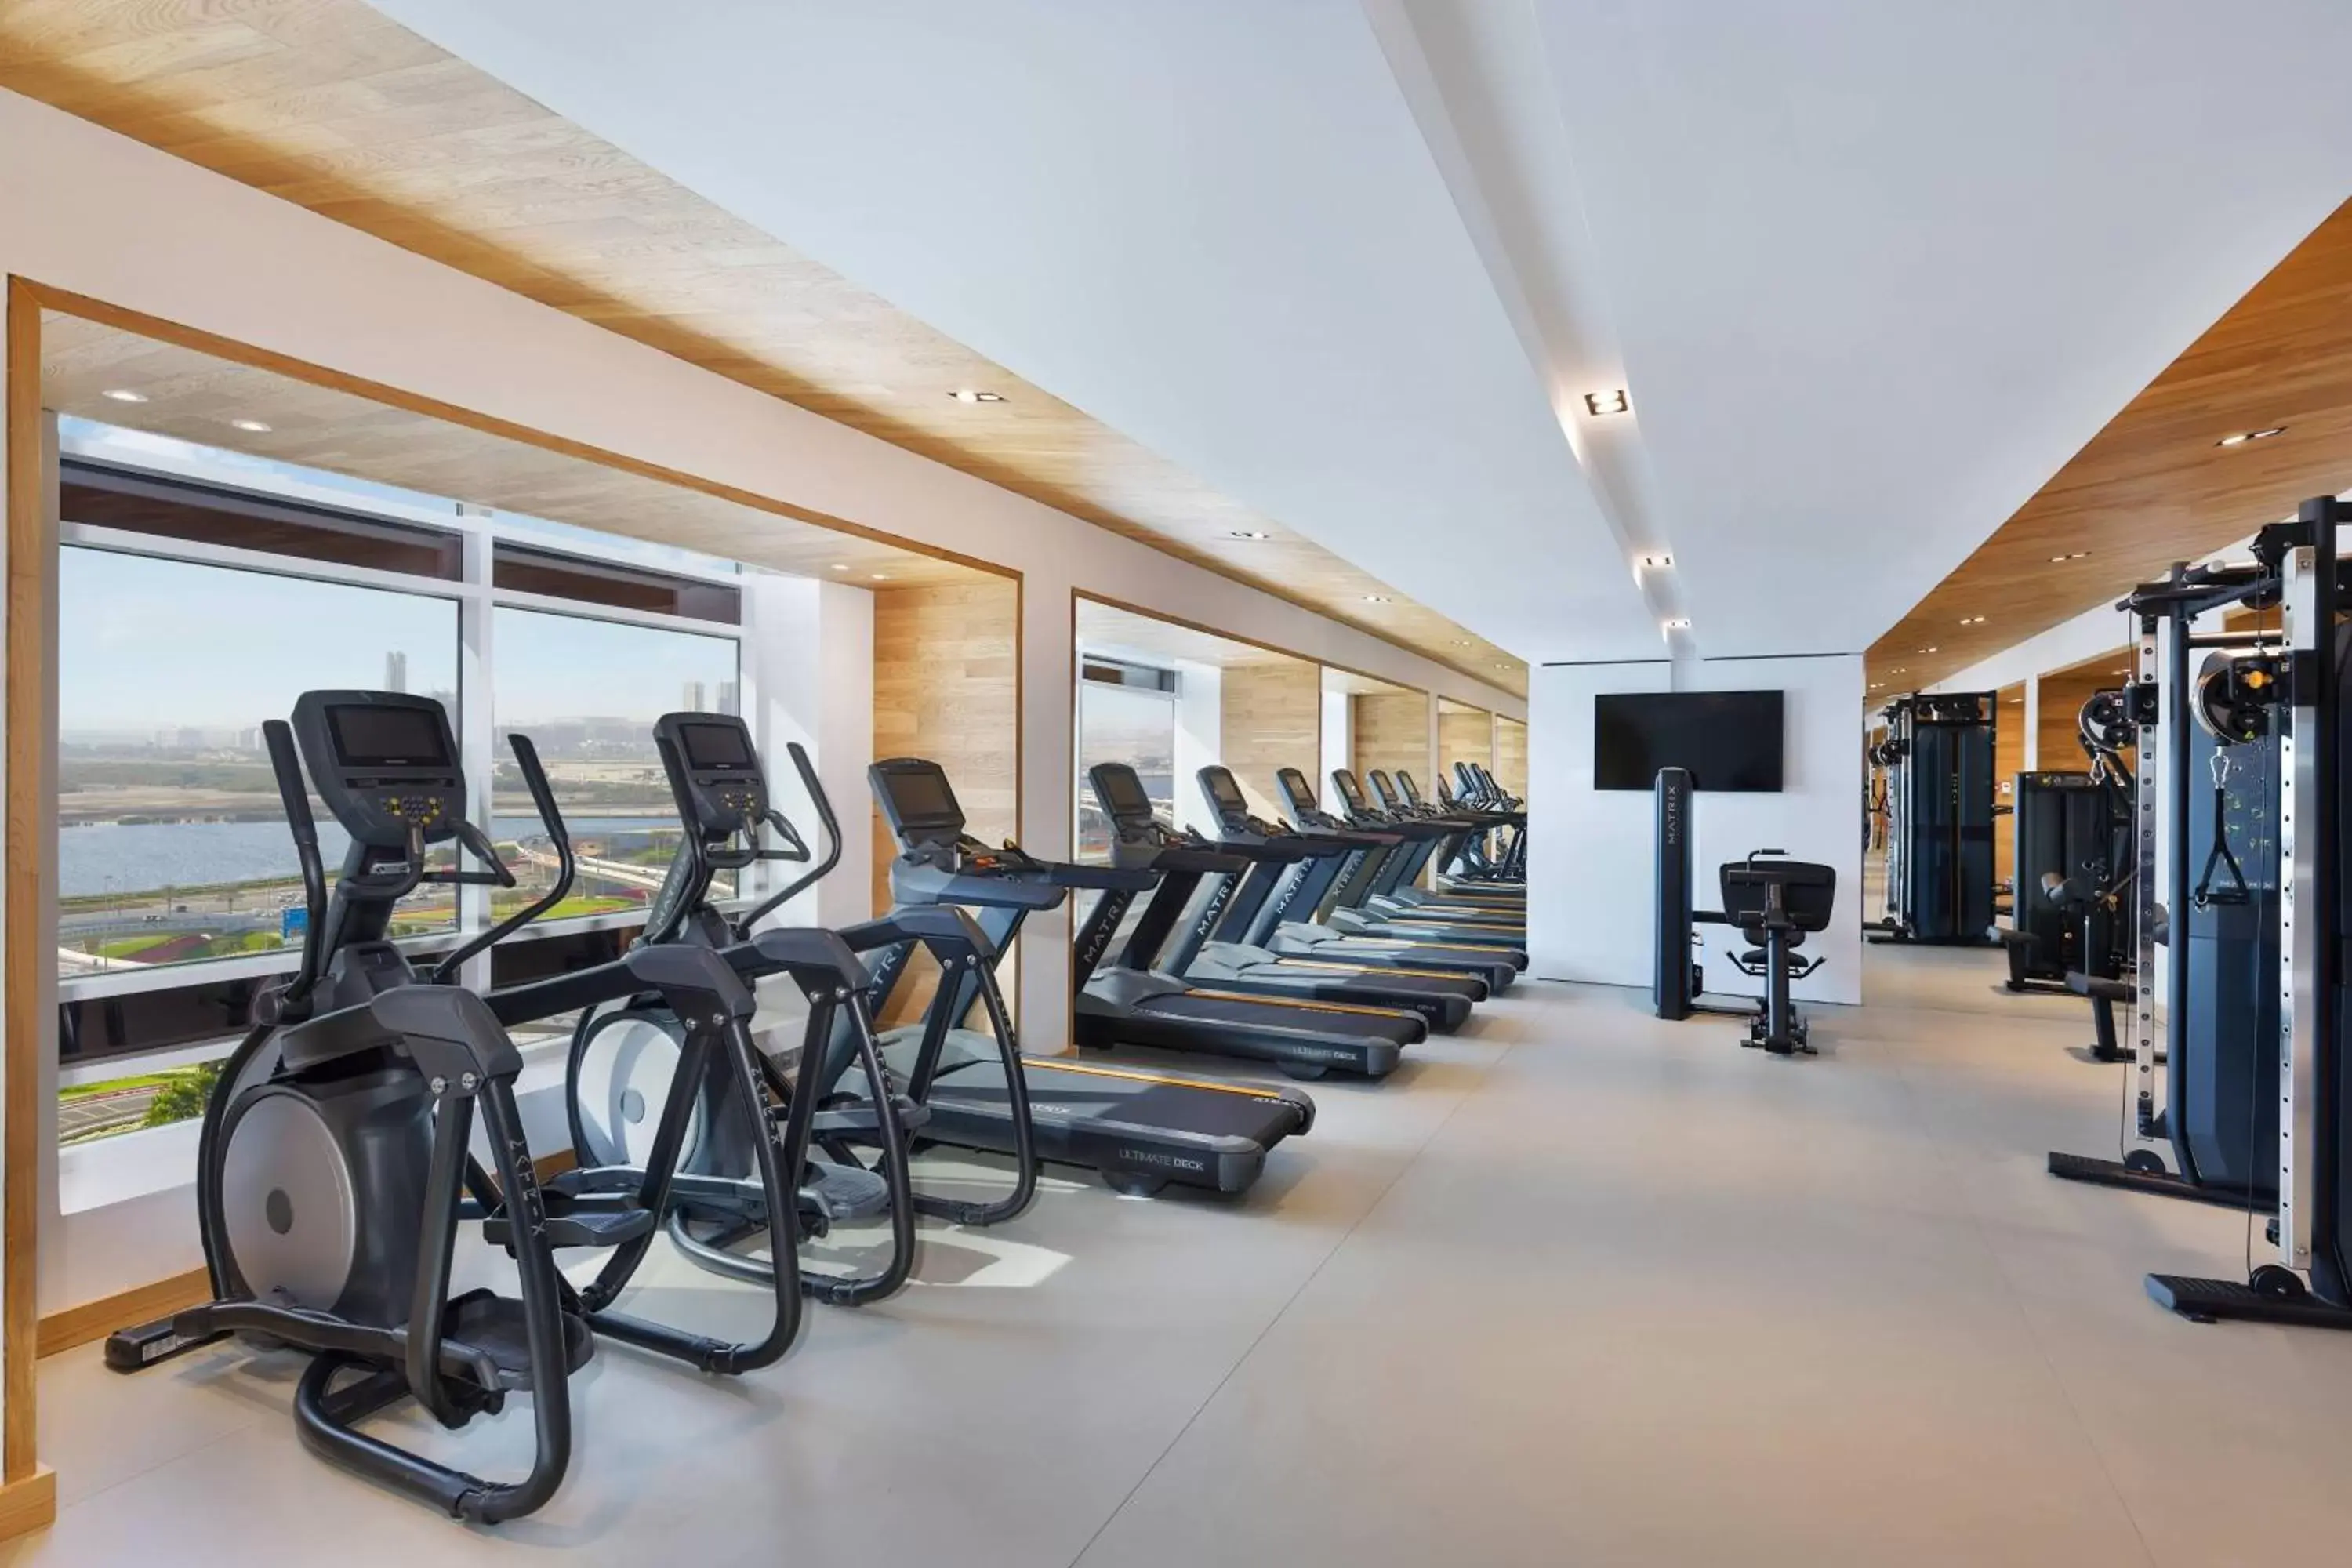 Fitness centre/facilities, Fitness Center/Facilities in Residence Inn by Marriott Al Jaddaf